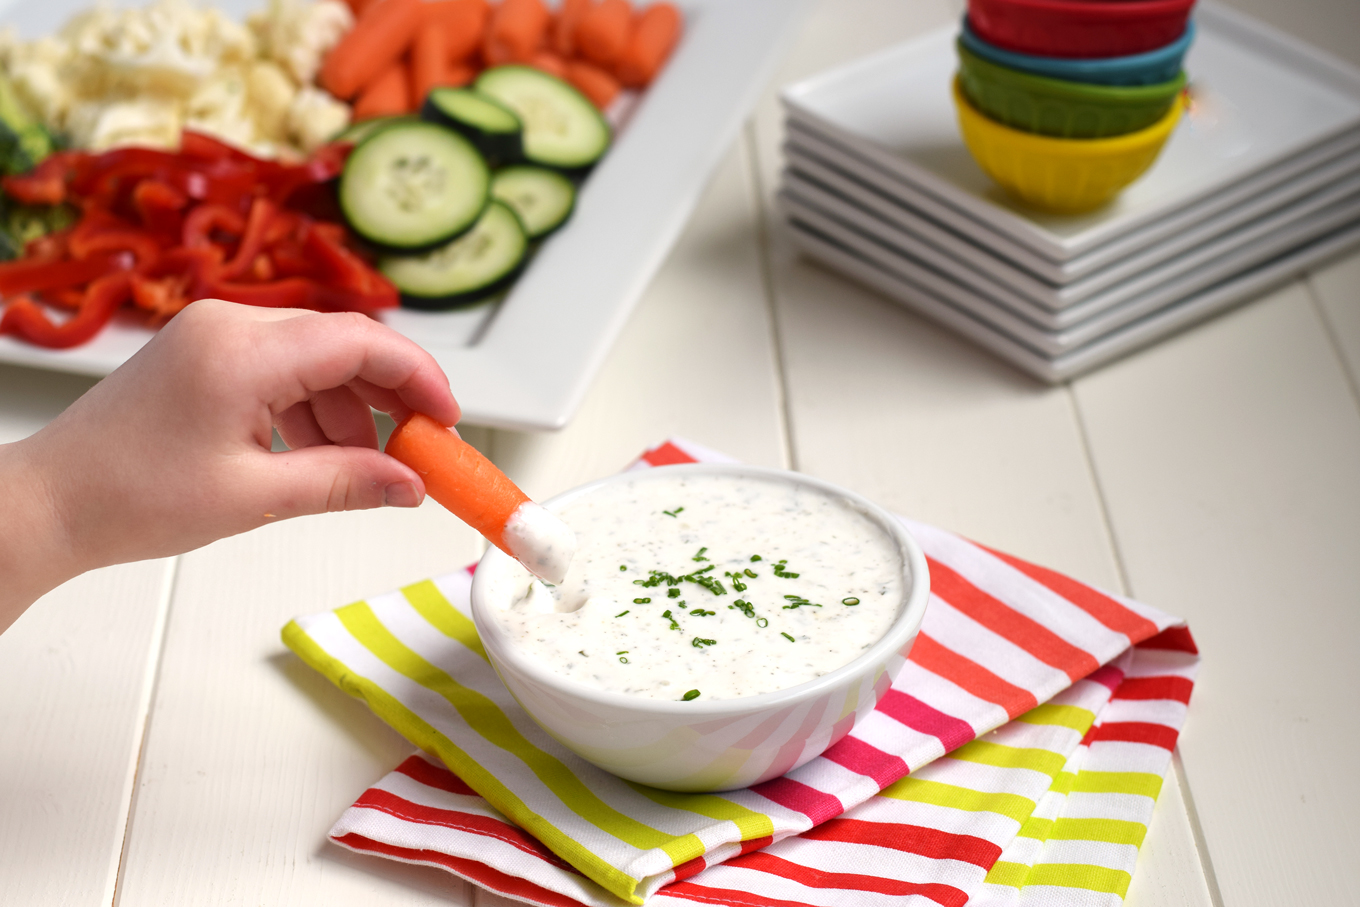 What is a simple Greek yogurt dip recipe?